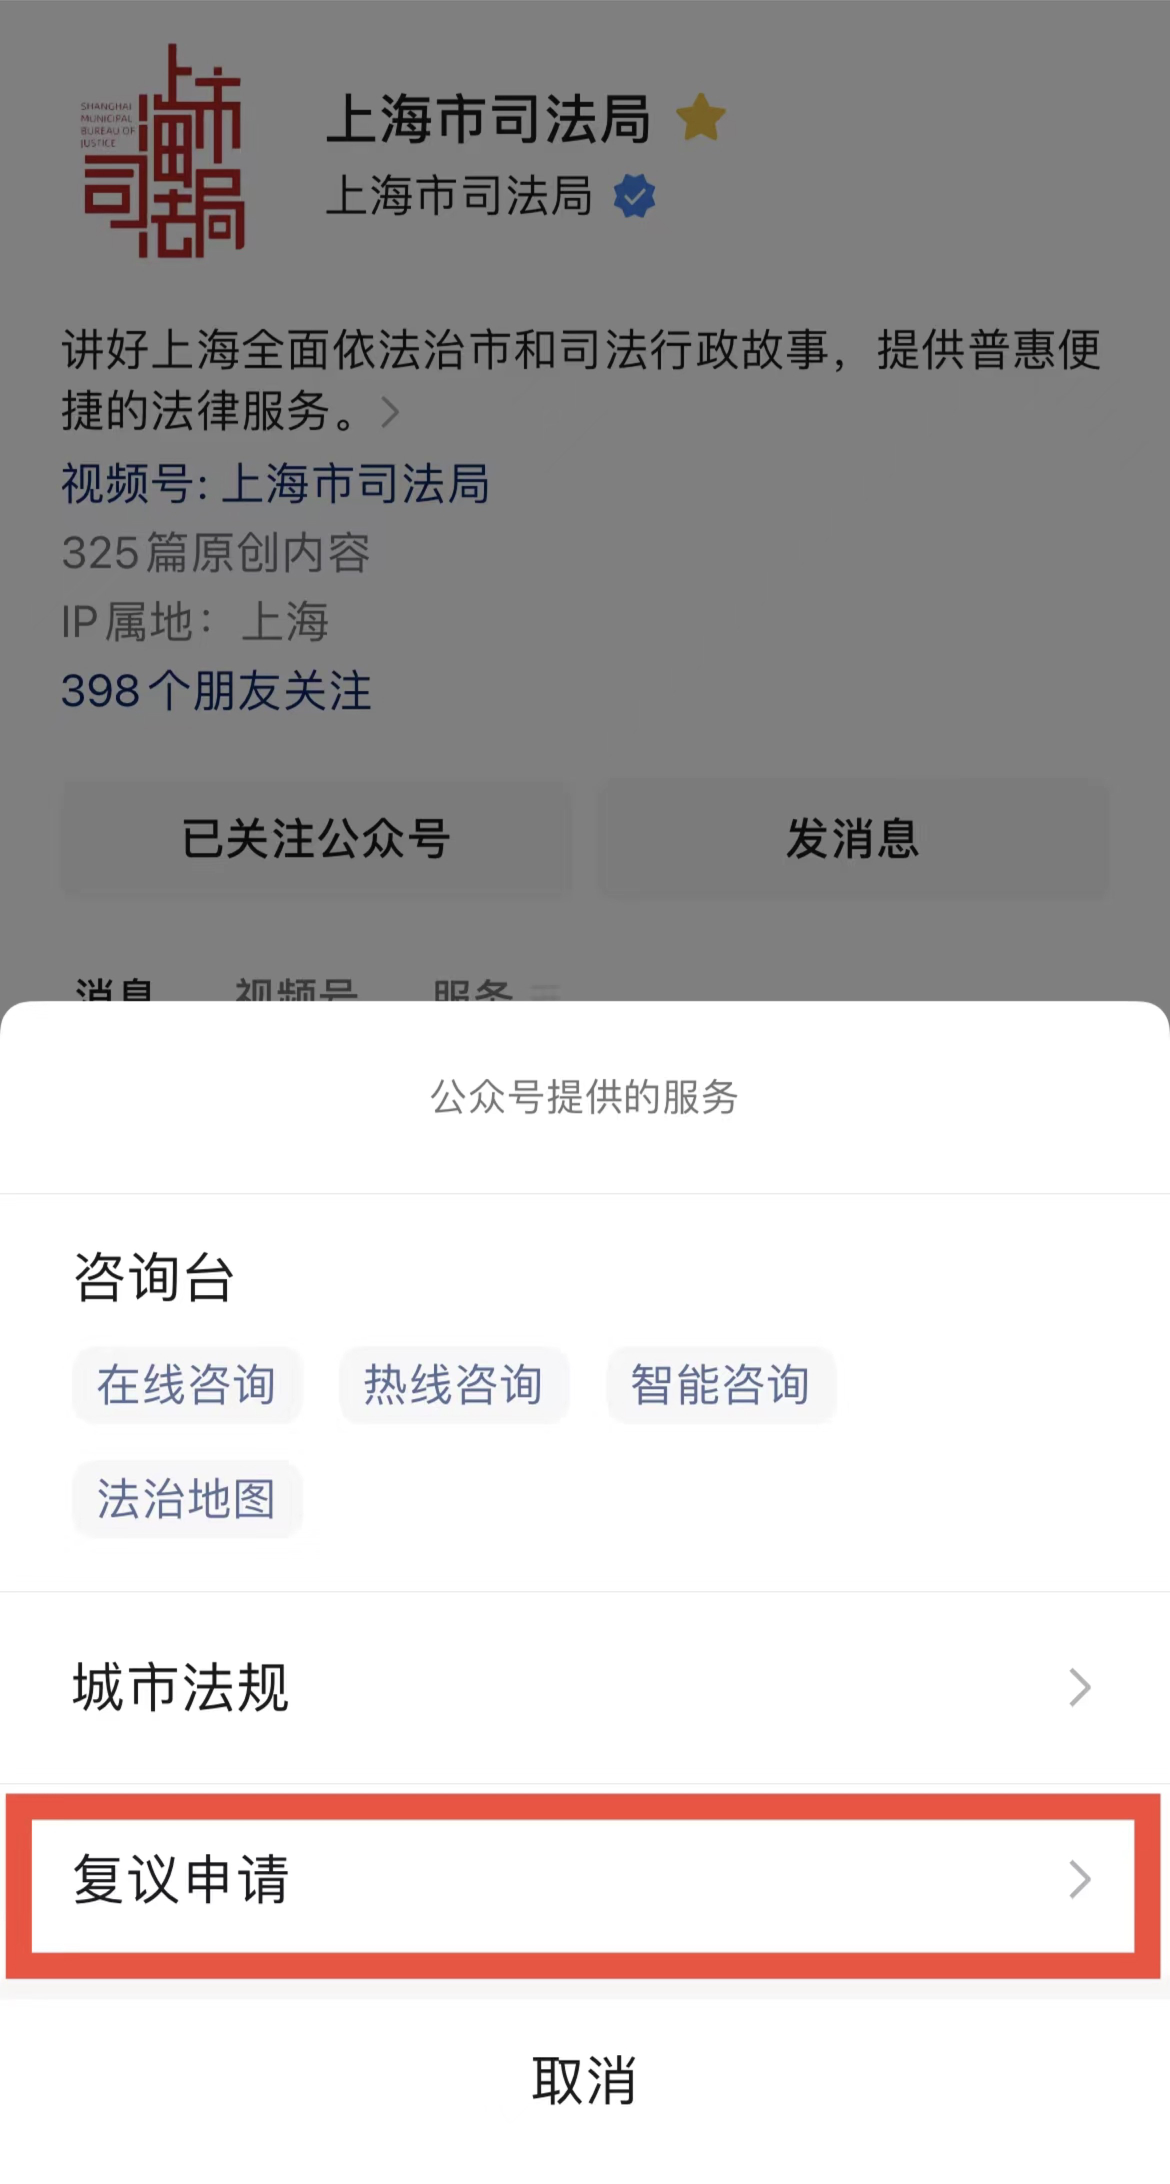 如何开通微信视频号？（申请地址） | TaoKeShow